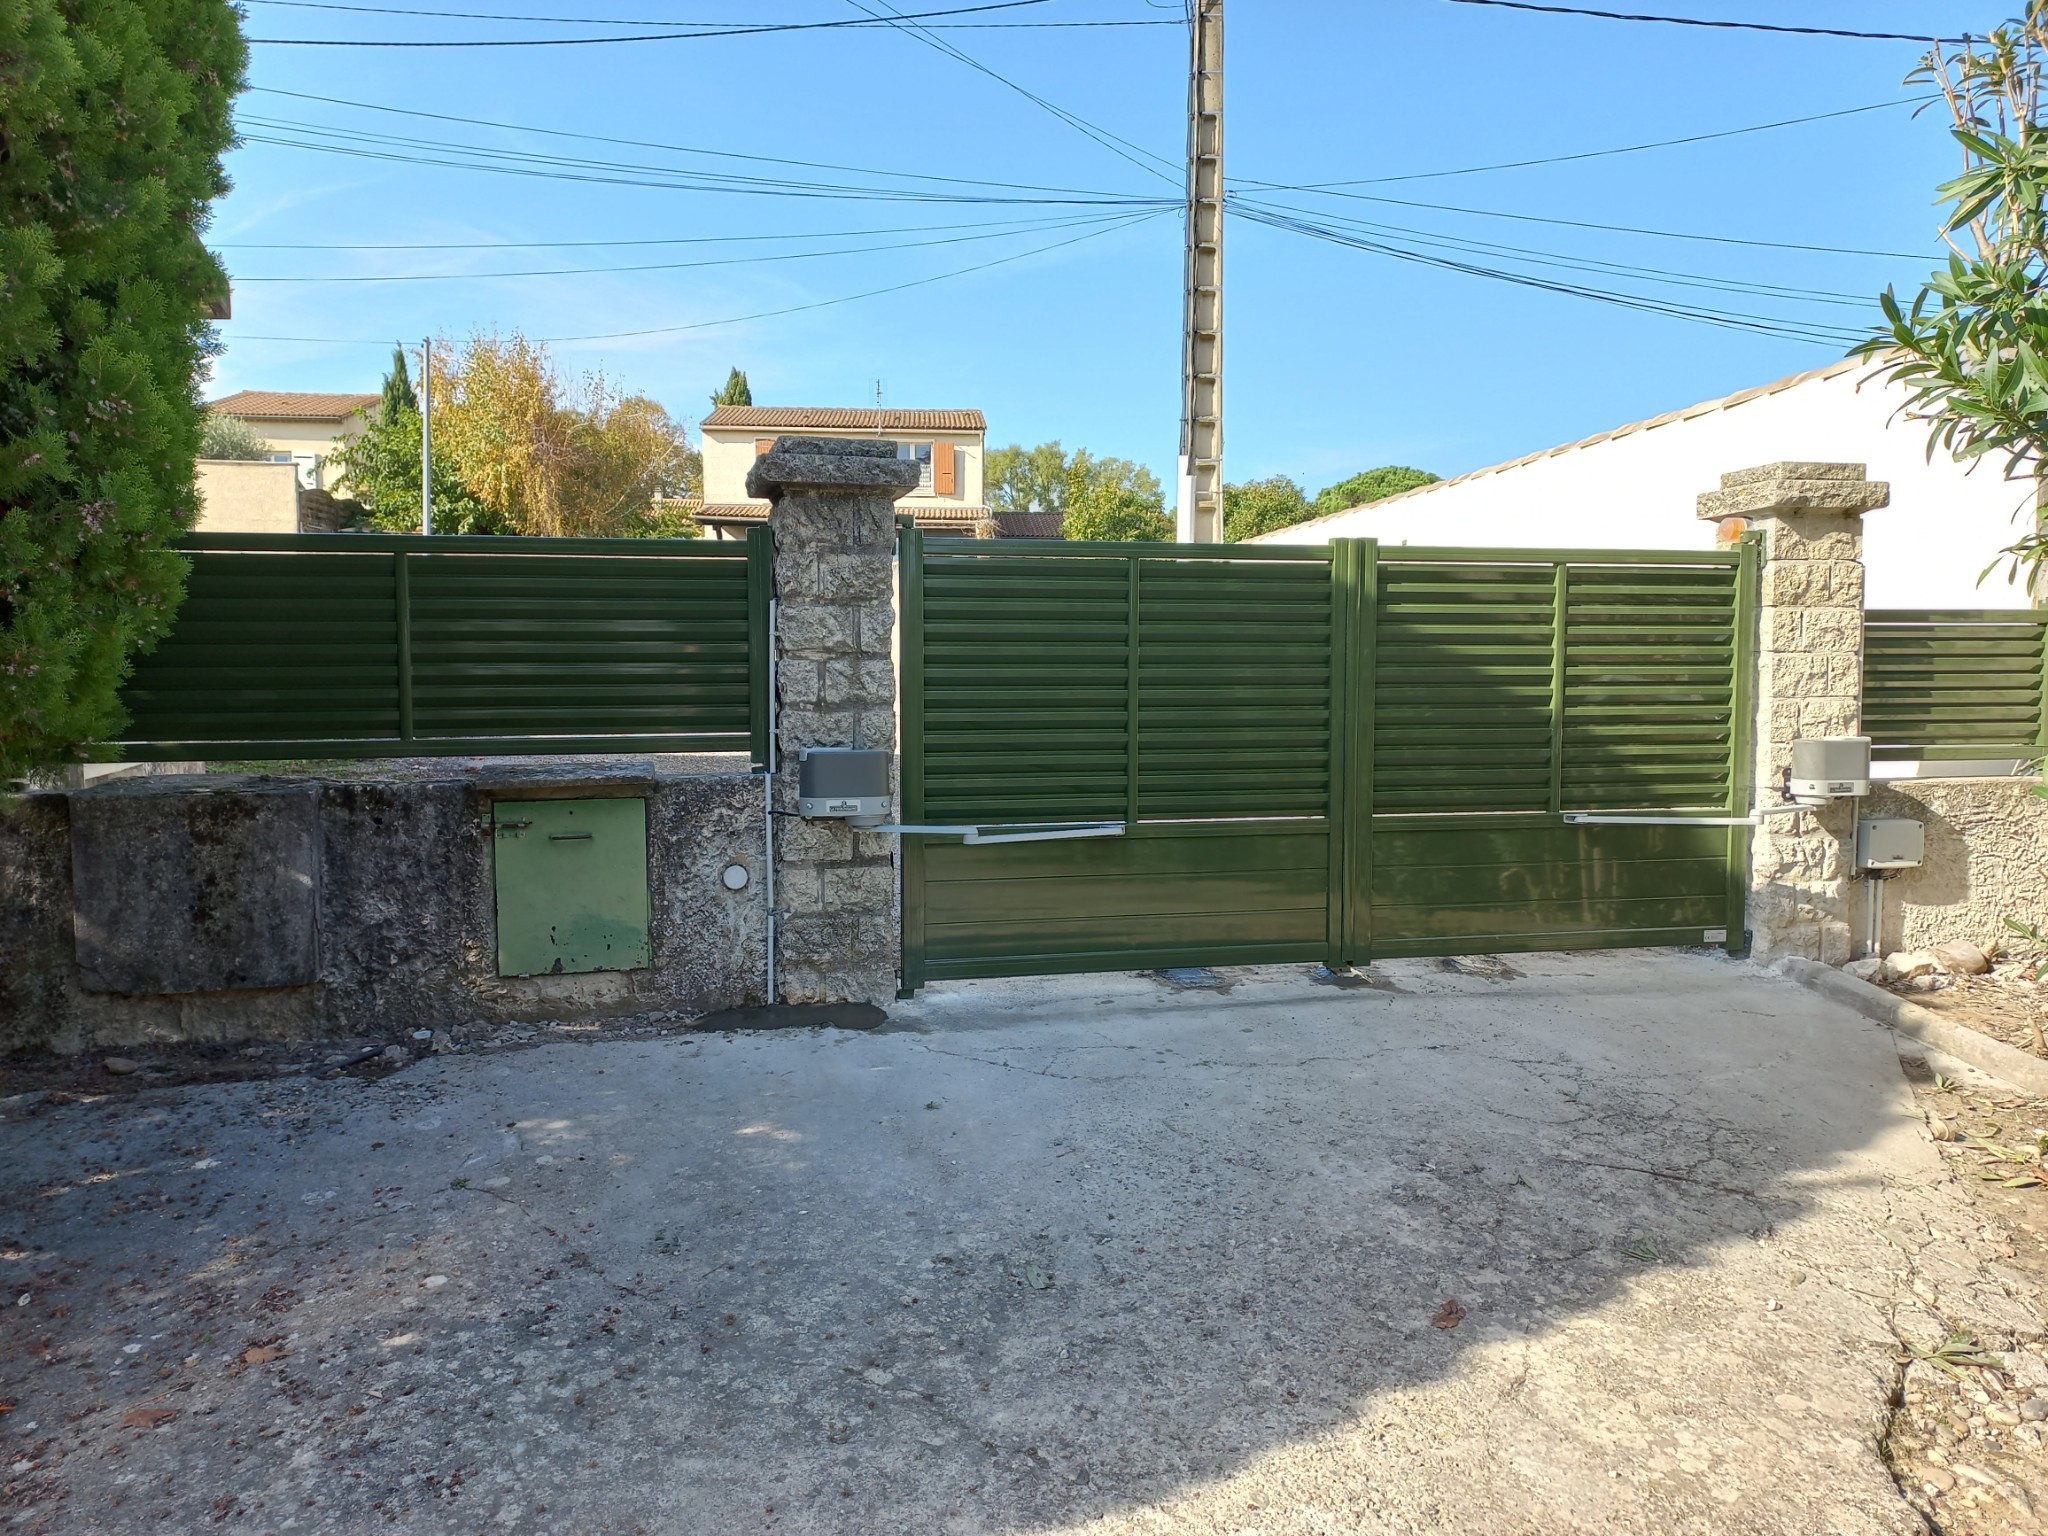 Portail motorisé et clôtures assorties en ALU à Pont Saint Esprit (Gard) -  Triola